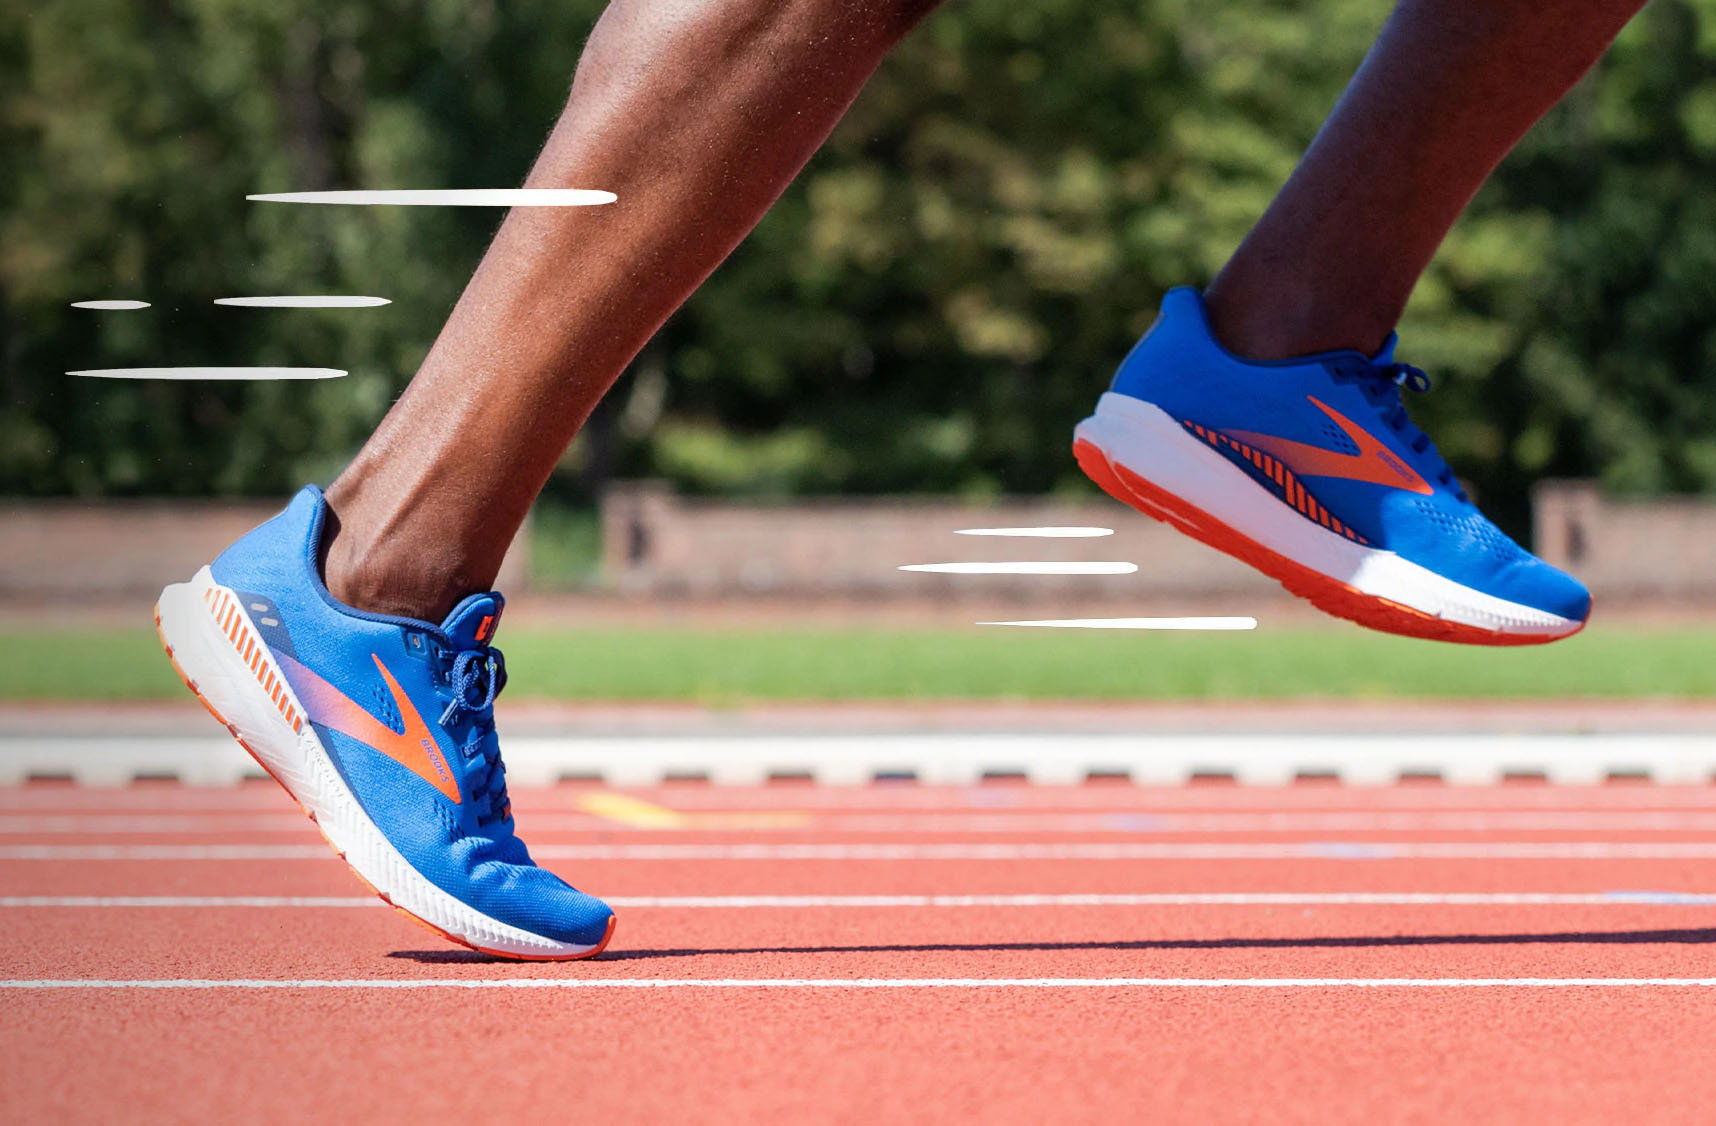 Labor dos de repuesto Brooks, pionera en tema zapatillas:Permite a atletas calzar otras marcas